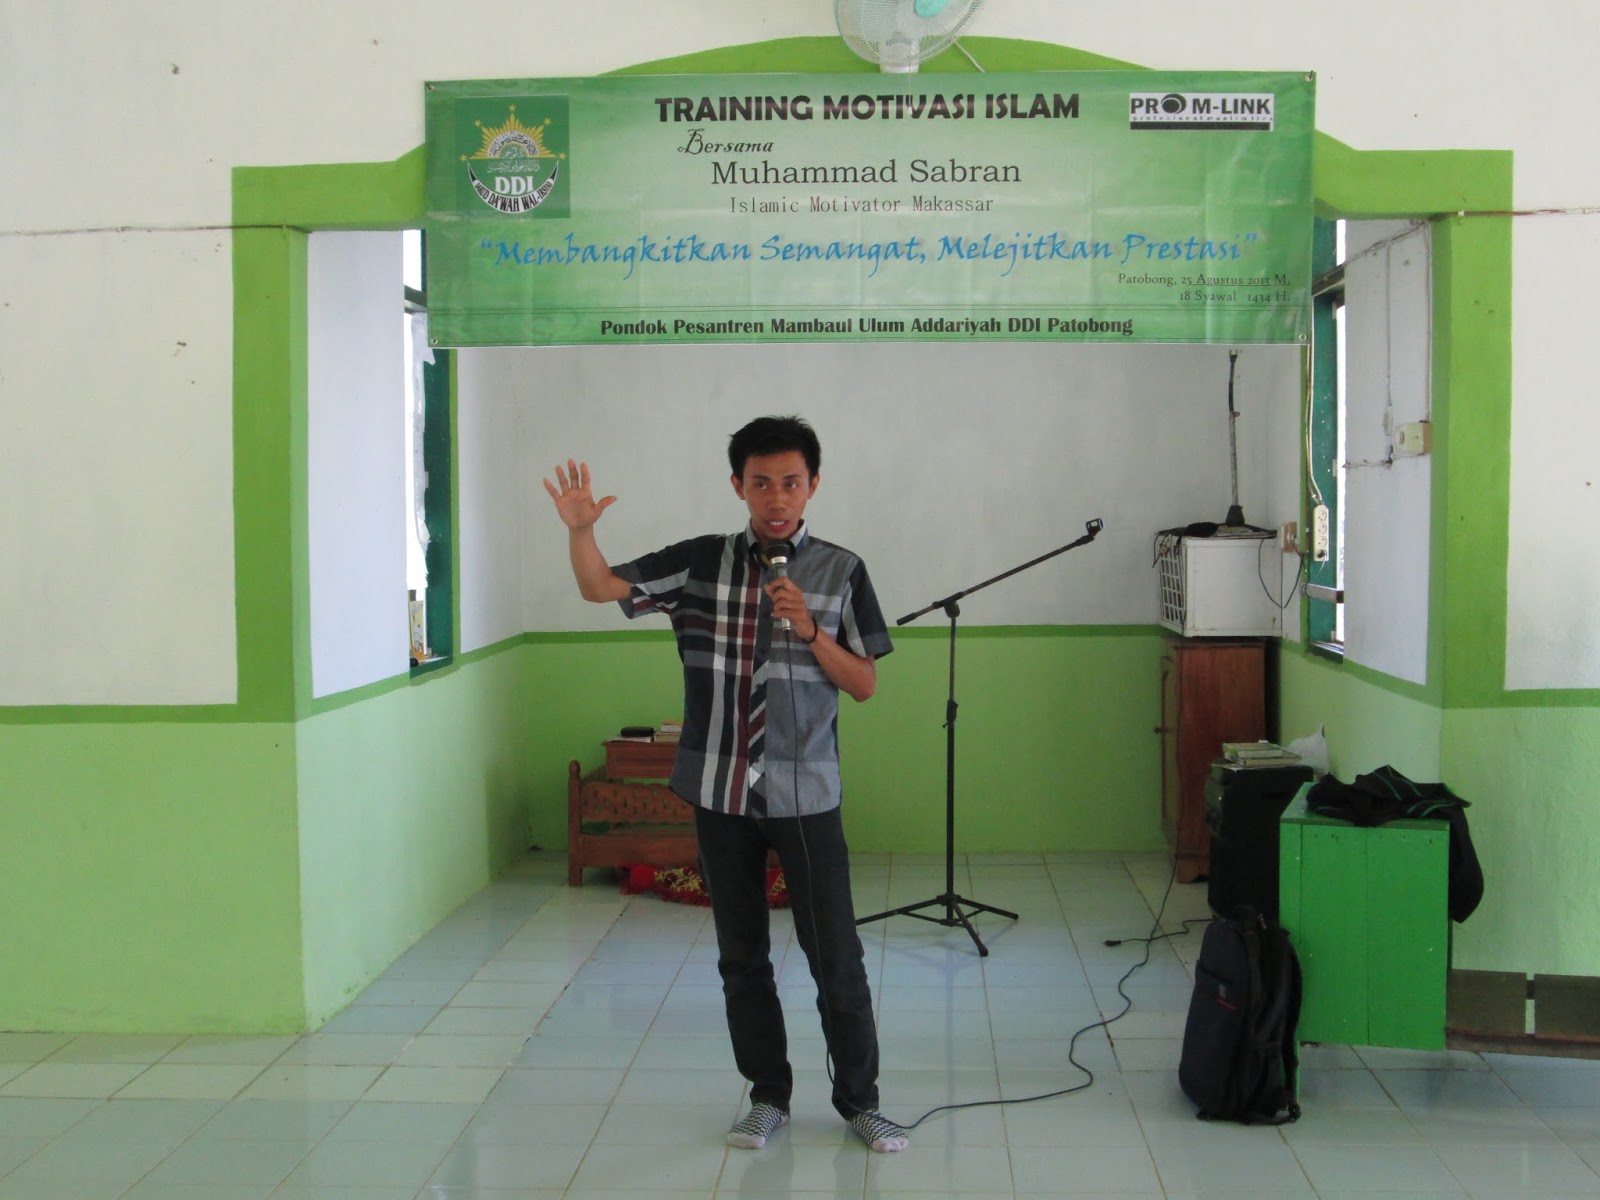 Training Motivasi Pelajar Kab Pinrang Bag I Coach Sabran